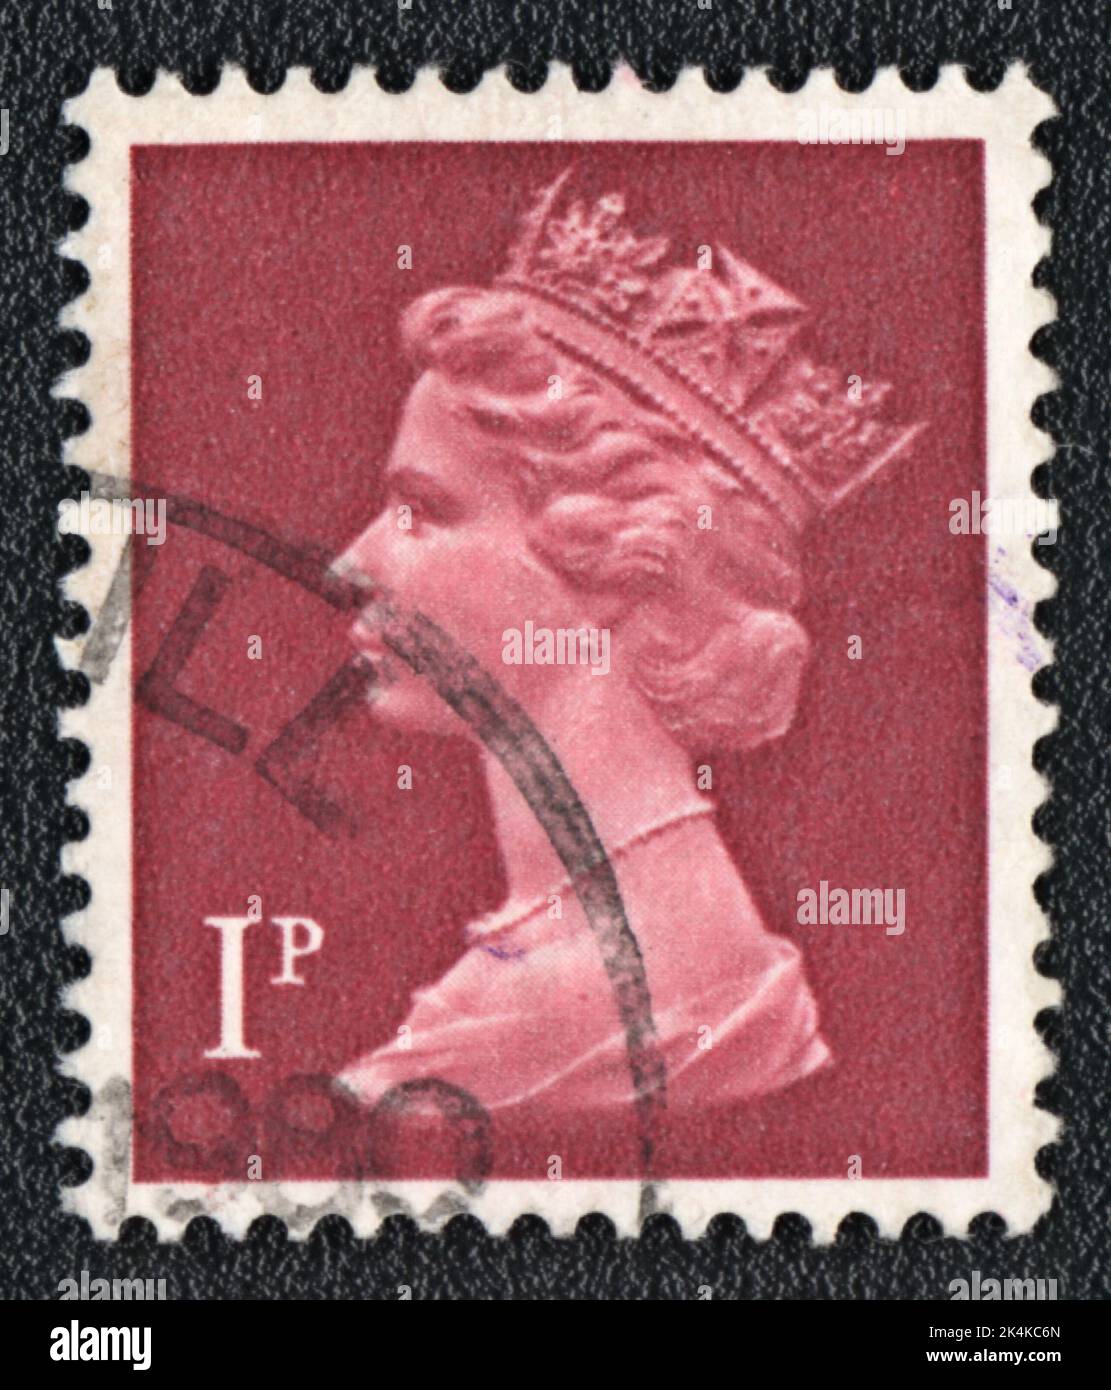 GRANDE-BRETAGNE - VERS 1980: Timbre imprimé par la Grande-Bretagne, montre Portrait de la reine Elizabeth 2nd sur le rouge, vers 1980 Banque D'Images